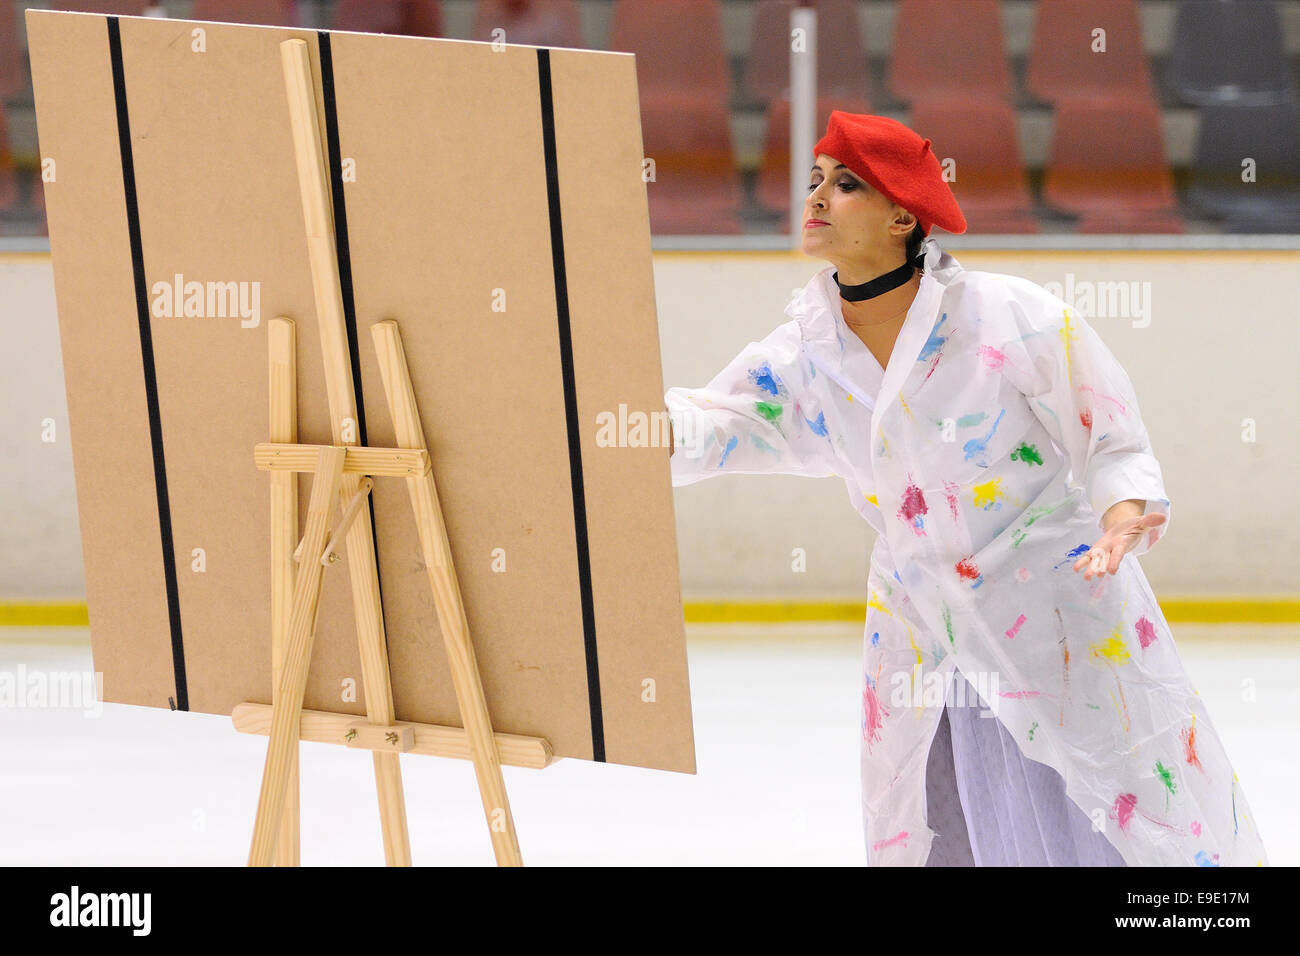 Barcelone - Mai 03 : jeune équipe d'une école de patinage sur glace effectue, déguisés en peintres, à la Coupe Internationale. Banque D'Images